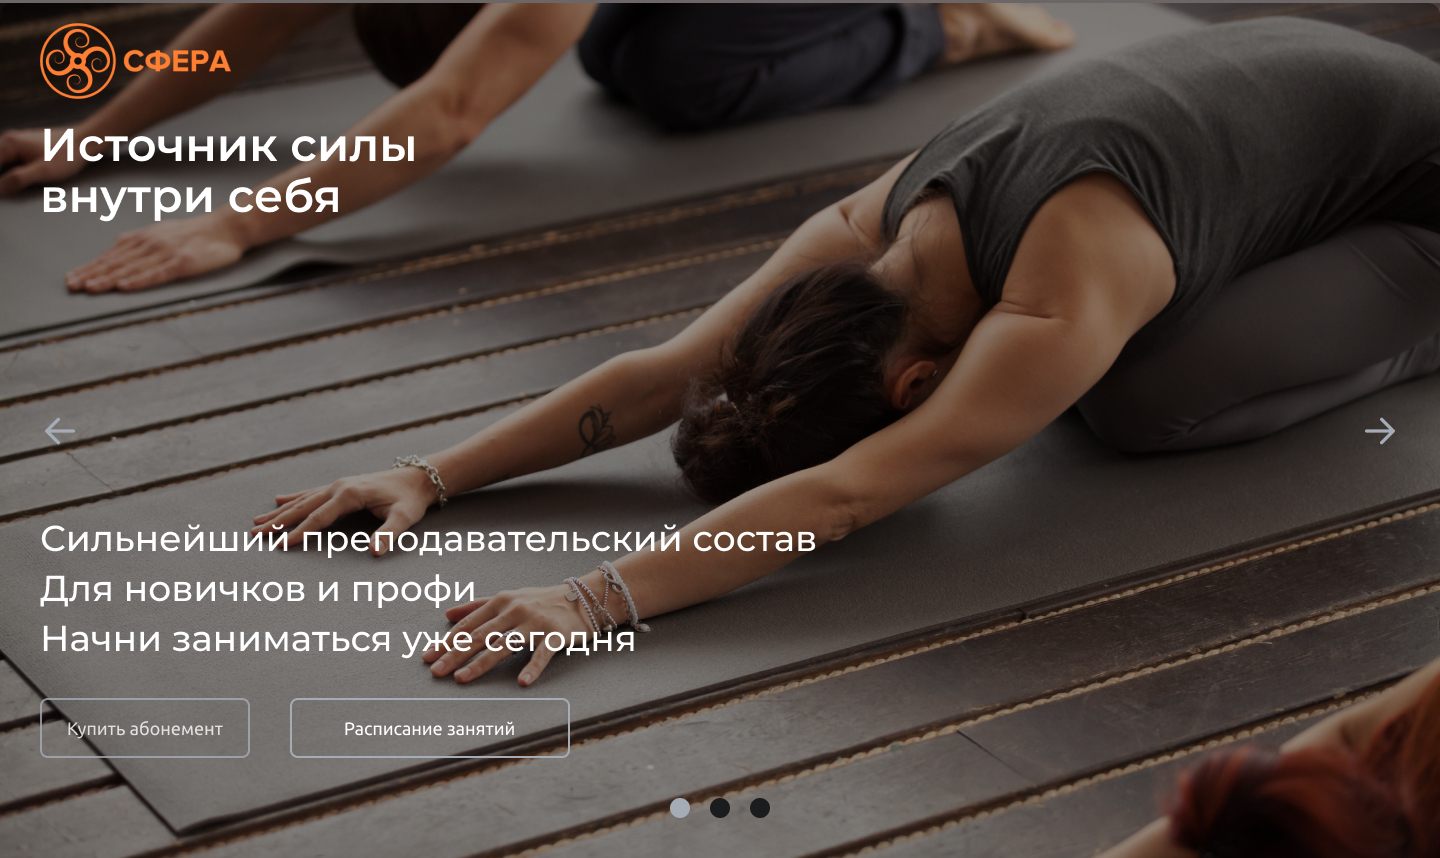 Оборудование для занятий йоги купить в Москве и Санкт-Петербурге